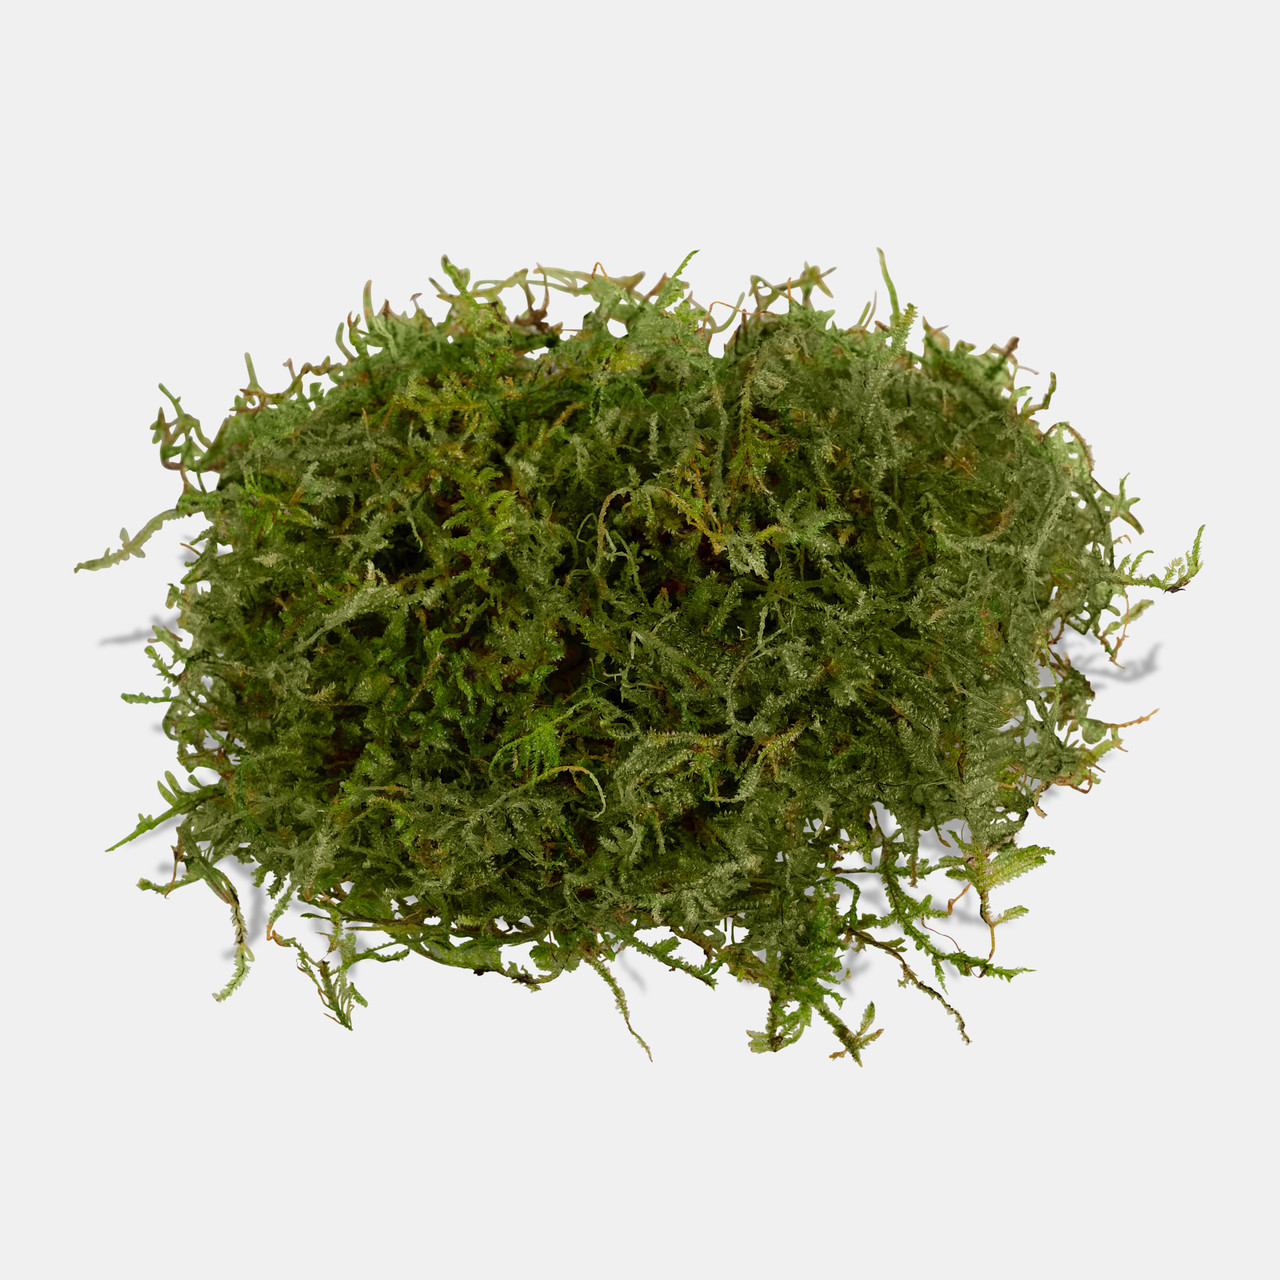 Vesicularia montagnei - Christmas Moss (Tc)